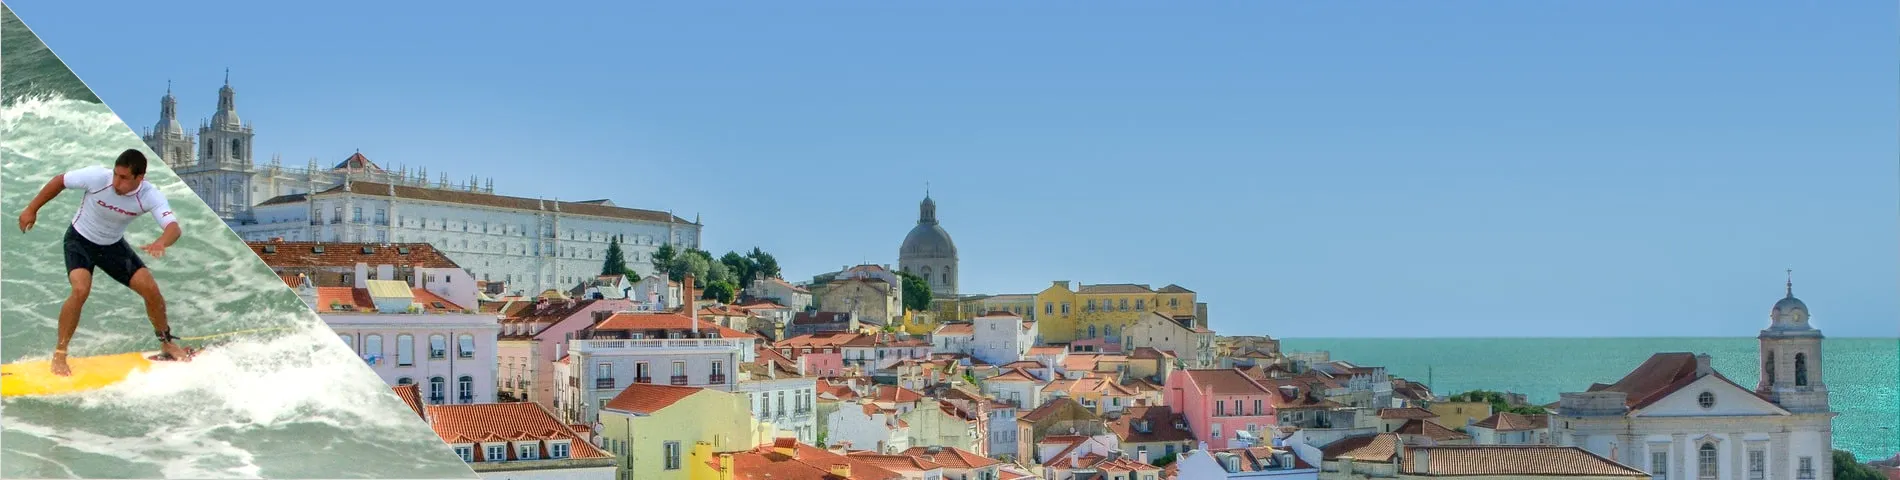 Lizbona - Portugalski & Surfowanie 